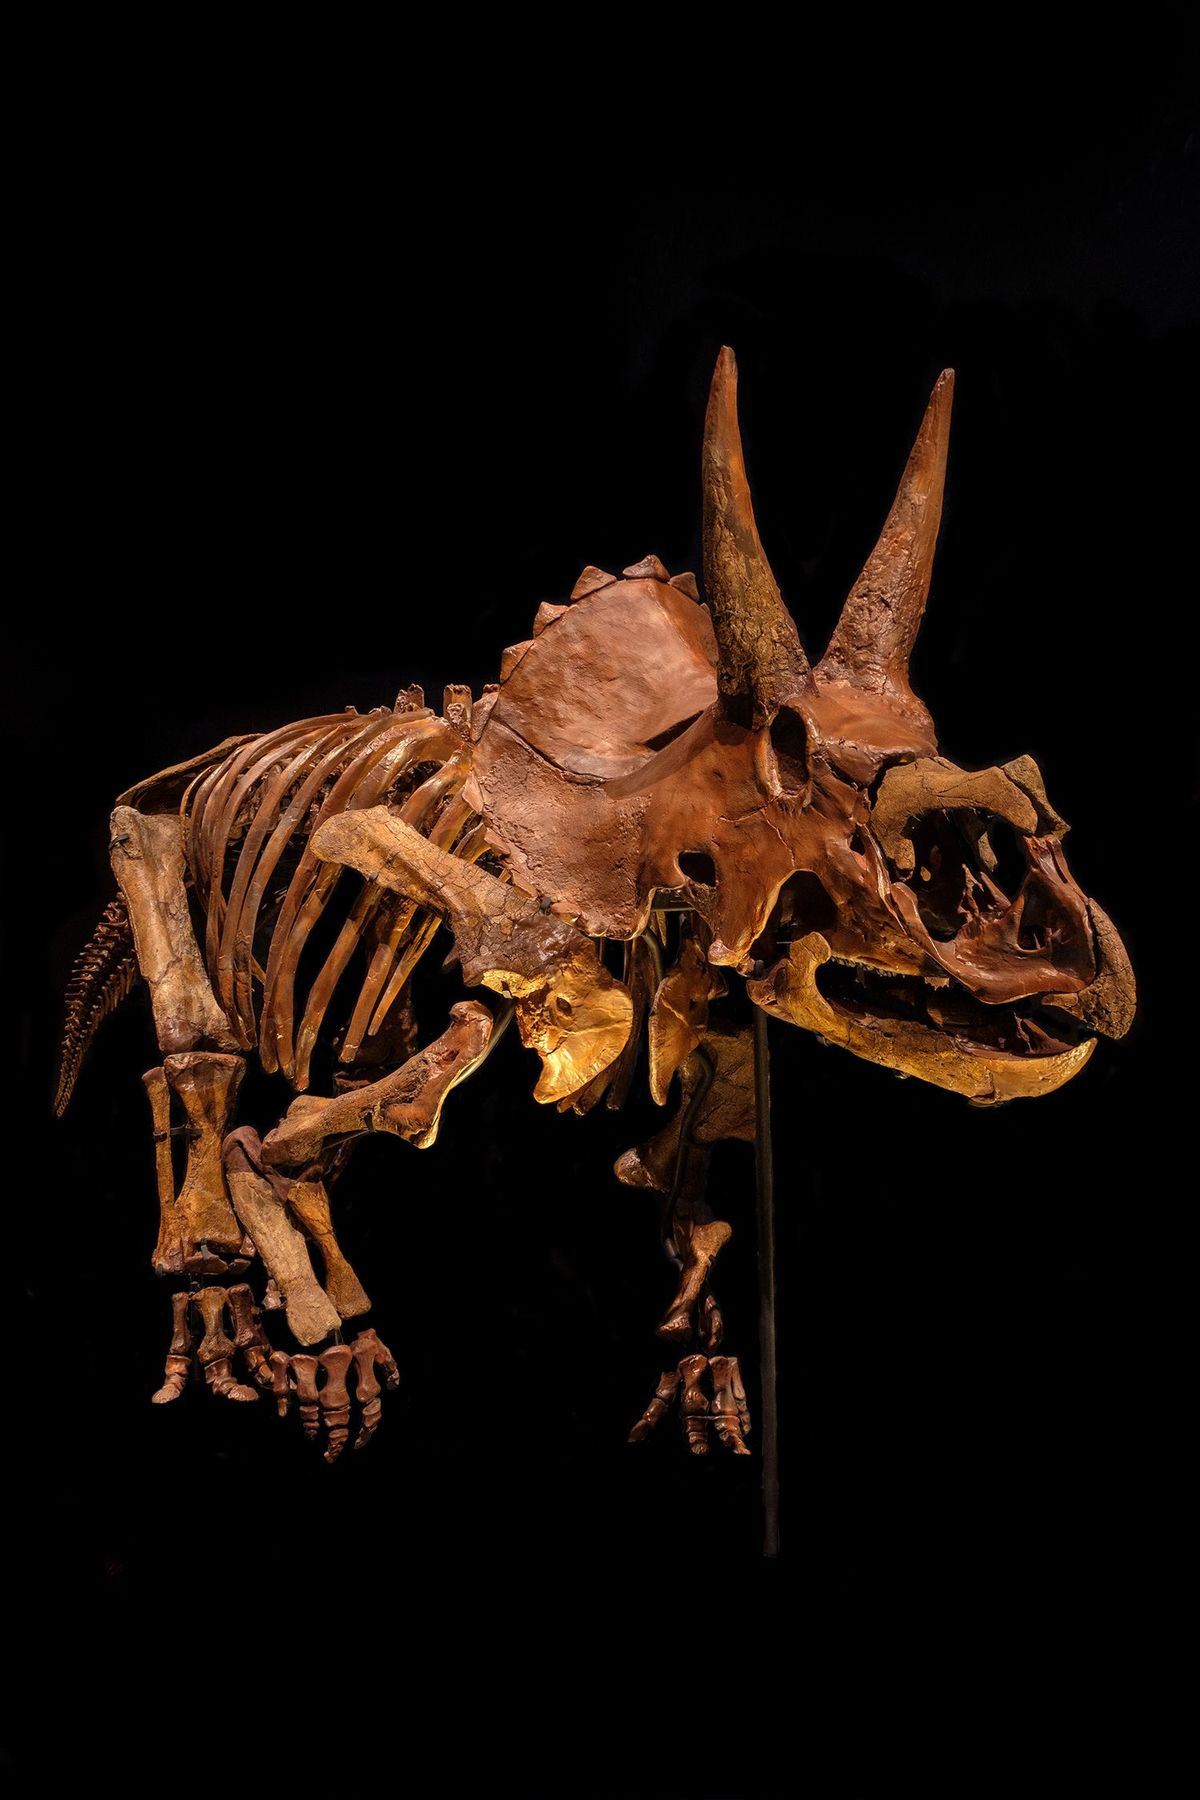 De nieuwe aanwinst triceratops Dirk zal naar verwachting bijdragen aan de toenemende bezoekersaantallen van het museum van Naturalis Biodiversity Center